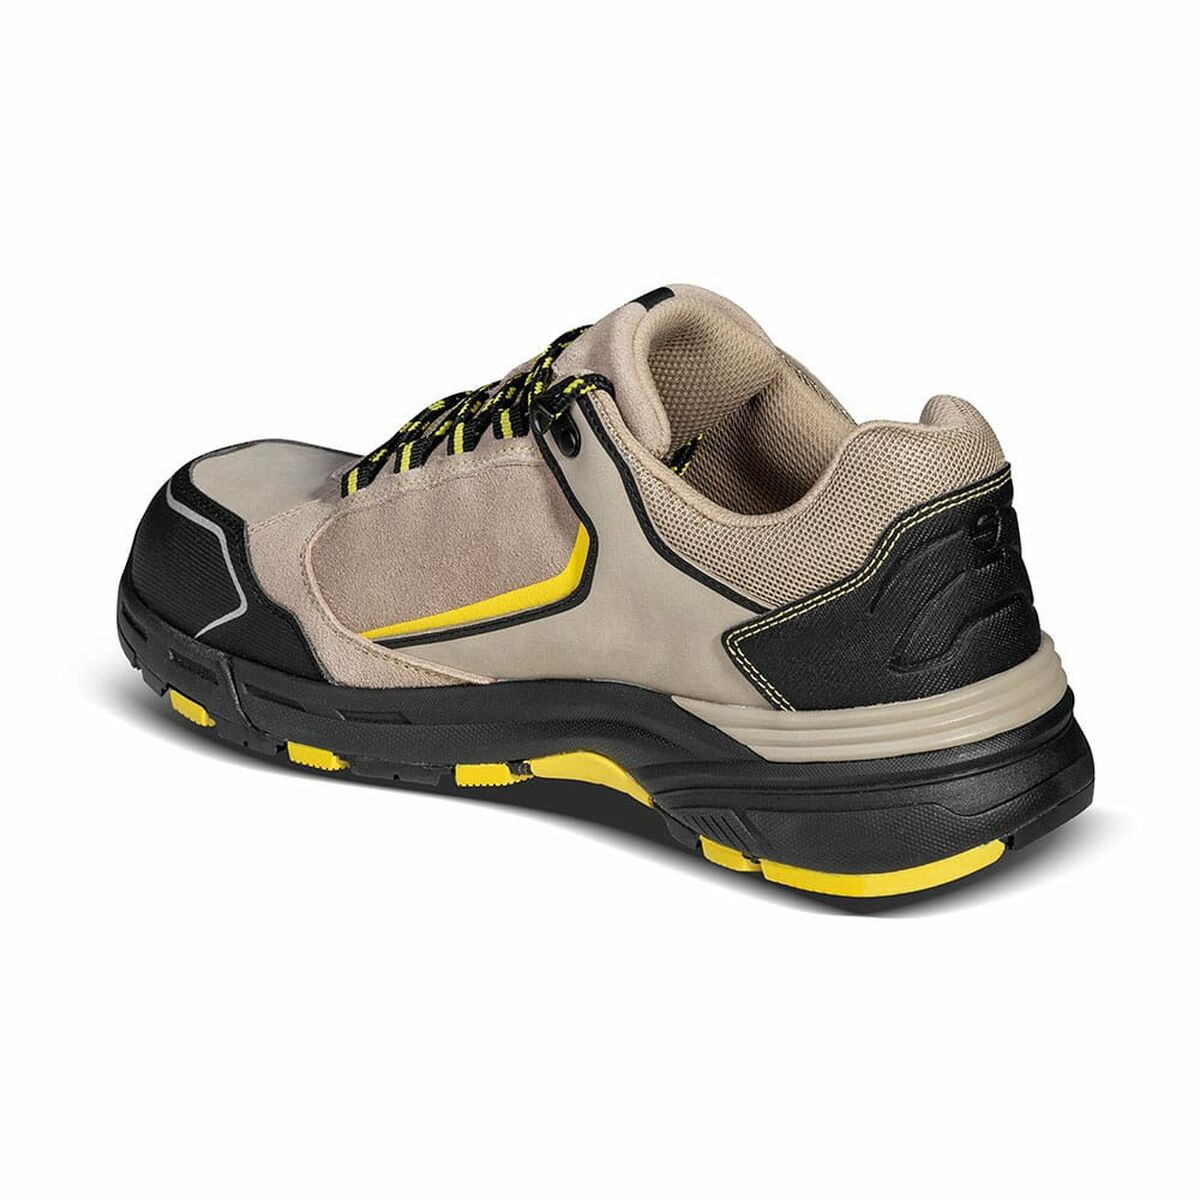 Sicherheits-Schuhe Sparco Allroad S3 ESD - AWK Flagship